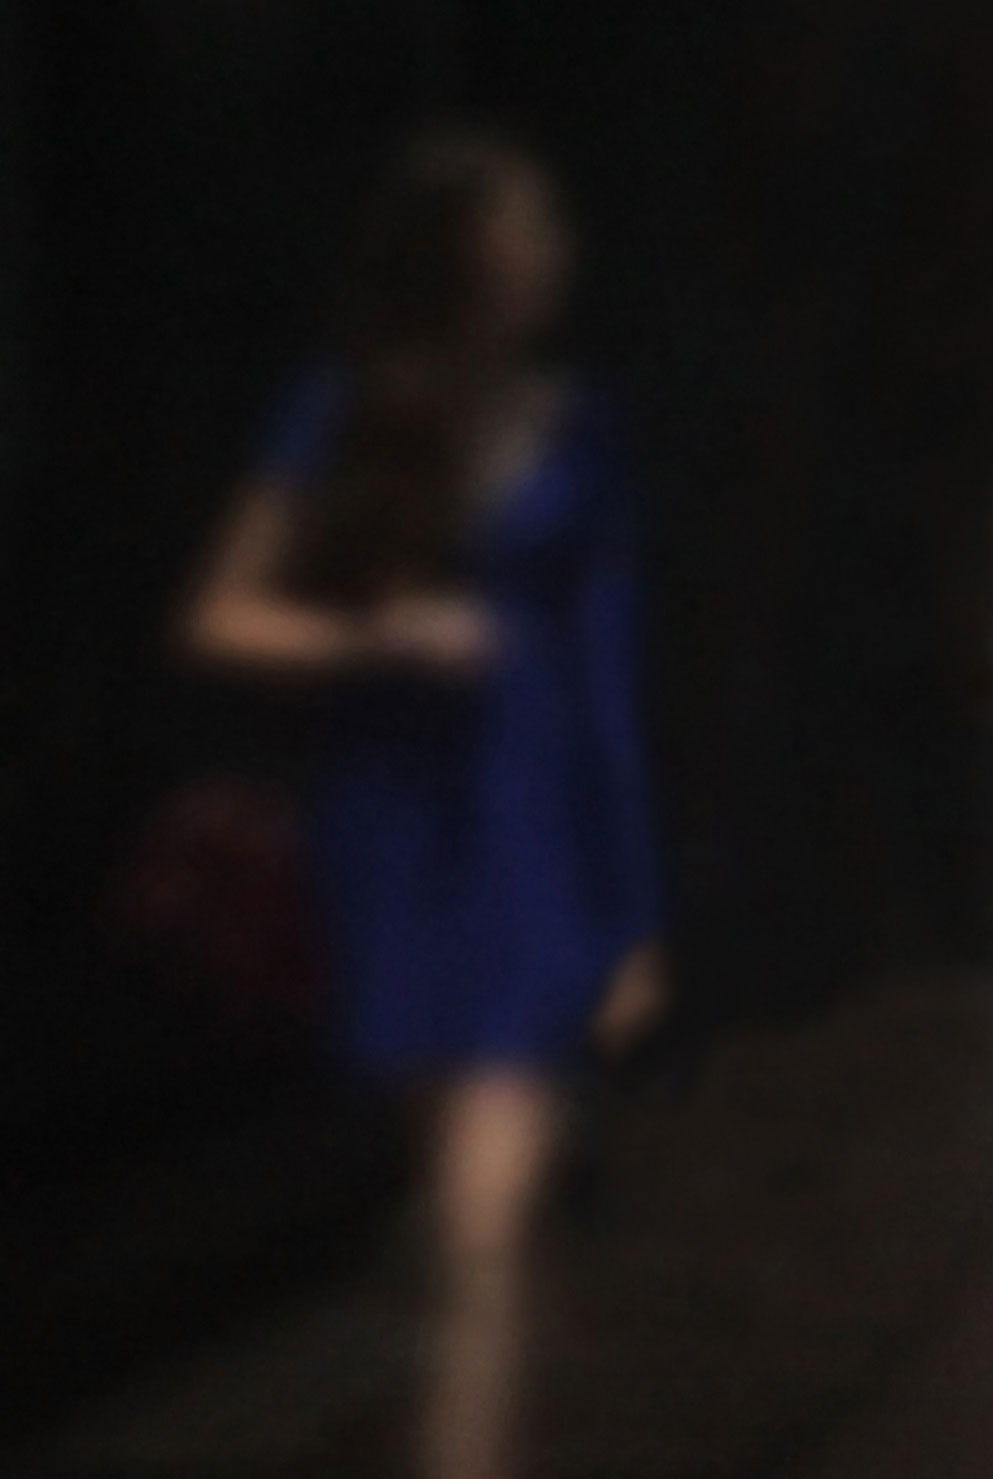 44 „Blau aus der Dunkelheit heraustretend“, 2012, New York, Camera Obscura, Pigmentdruck auf Alu-Dibond